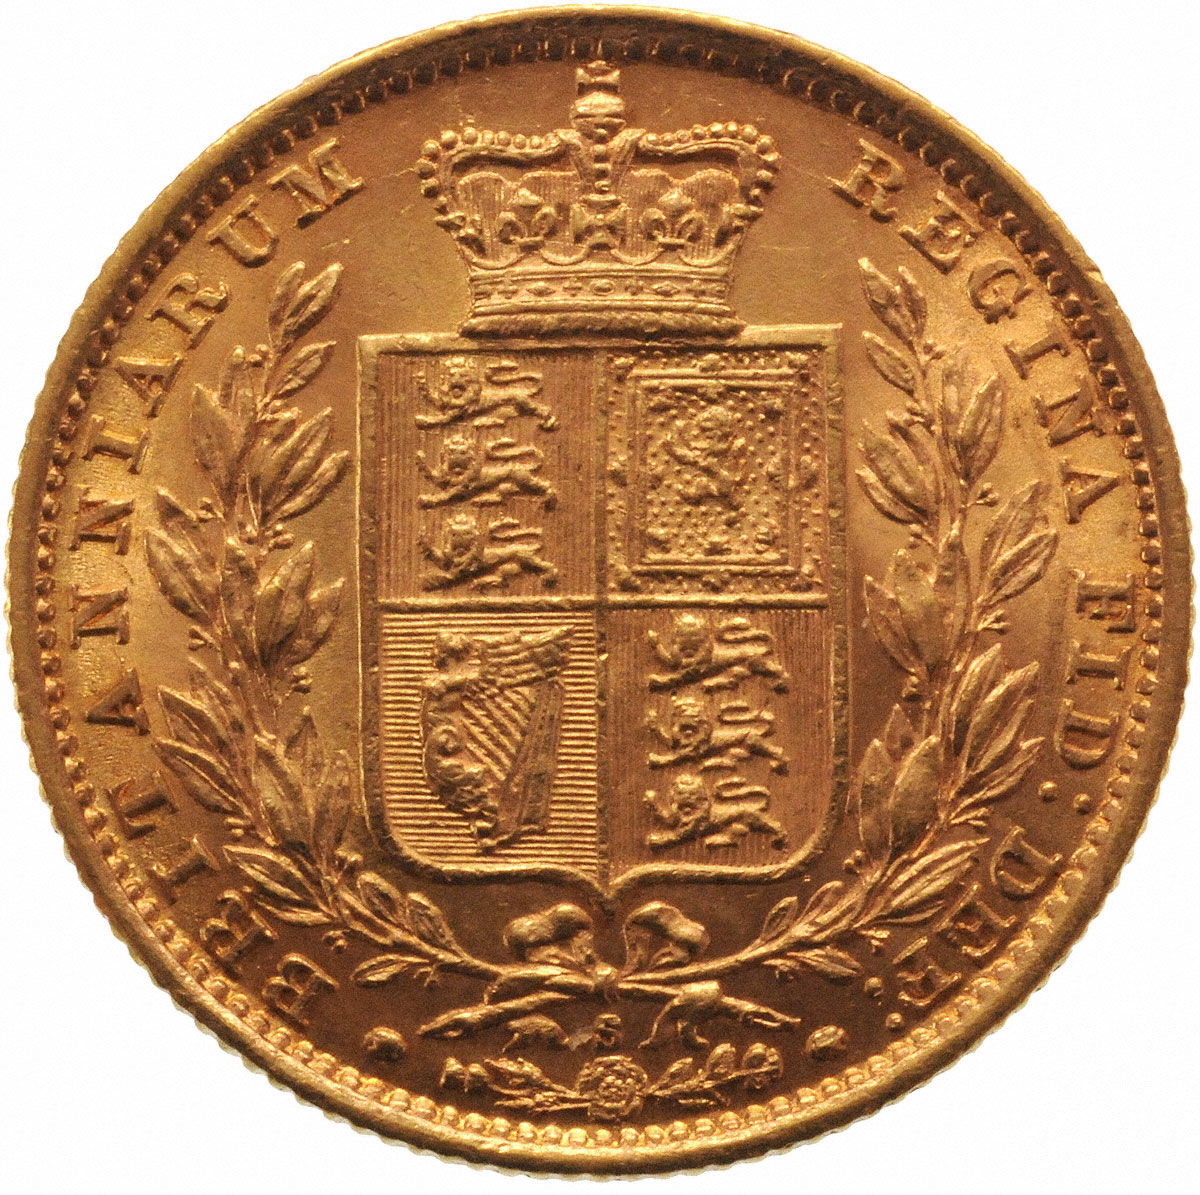 1881 Βικτώρια – Θυρεός (Νομισματοκοπείο Σίδνεϊ)